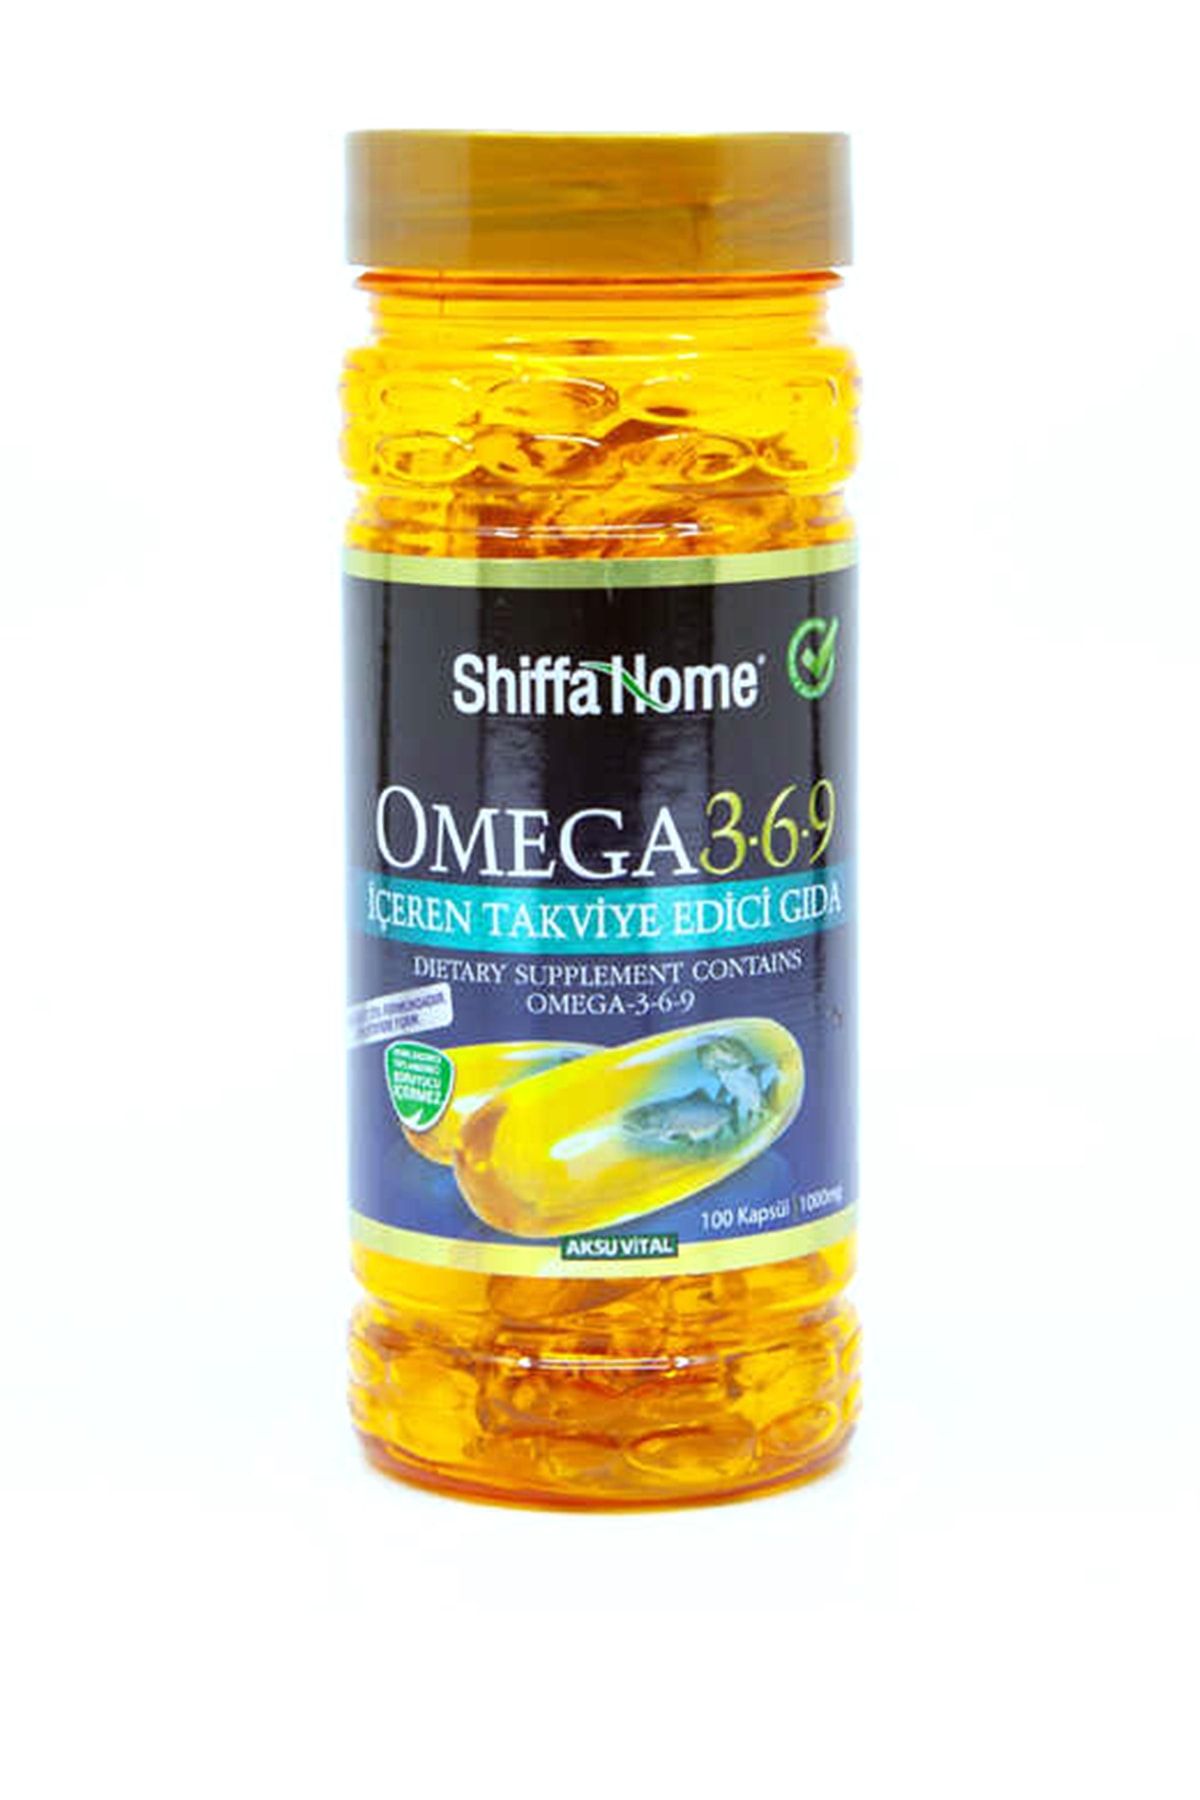 Shiffa Home Balık Yağı Omega 3 6 9 Balık Yağı Kapsülü Hapı Aksu Vital 100 Softgel Kapsül Omega 3-6-9